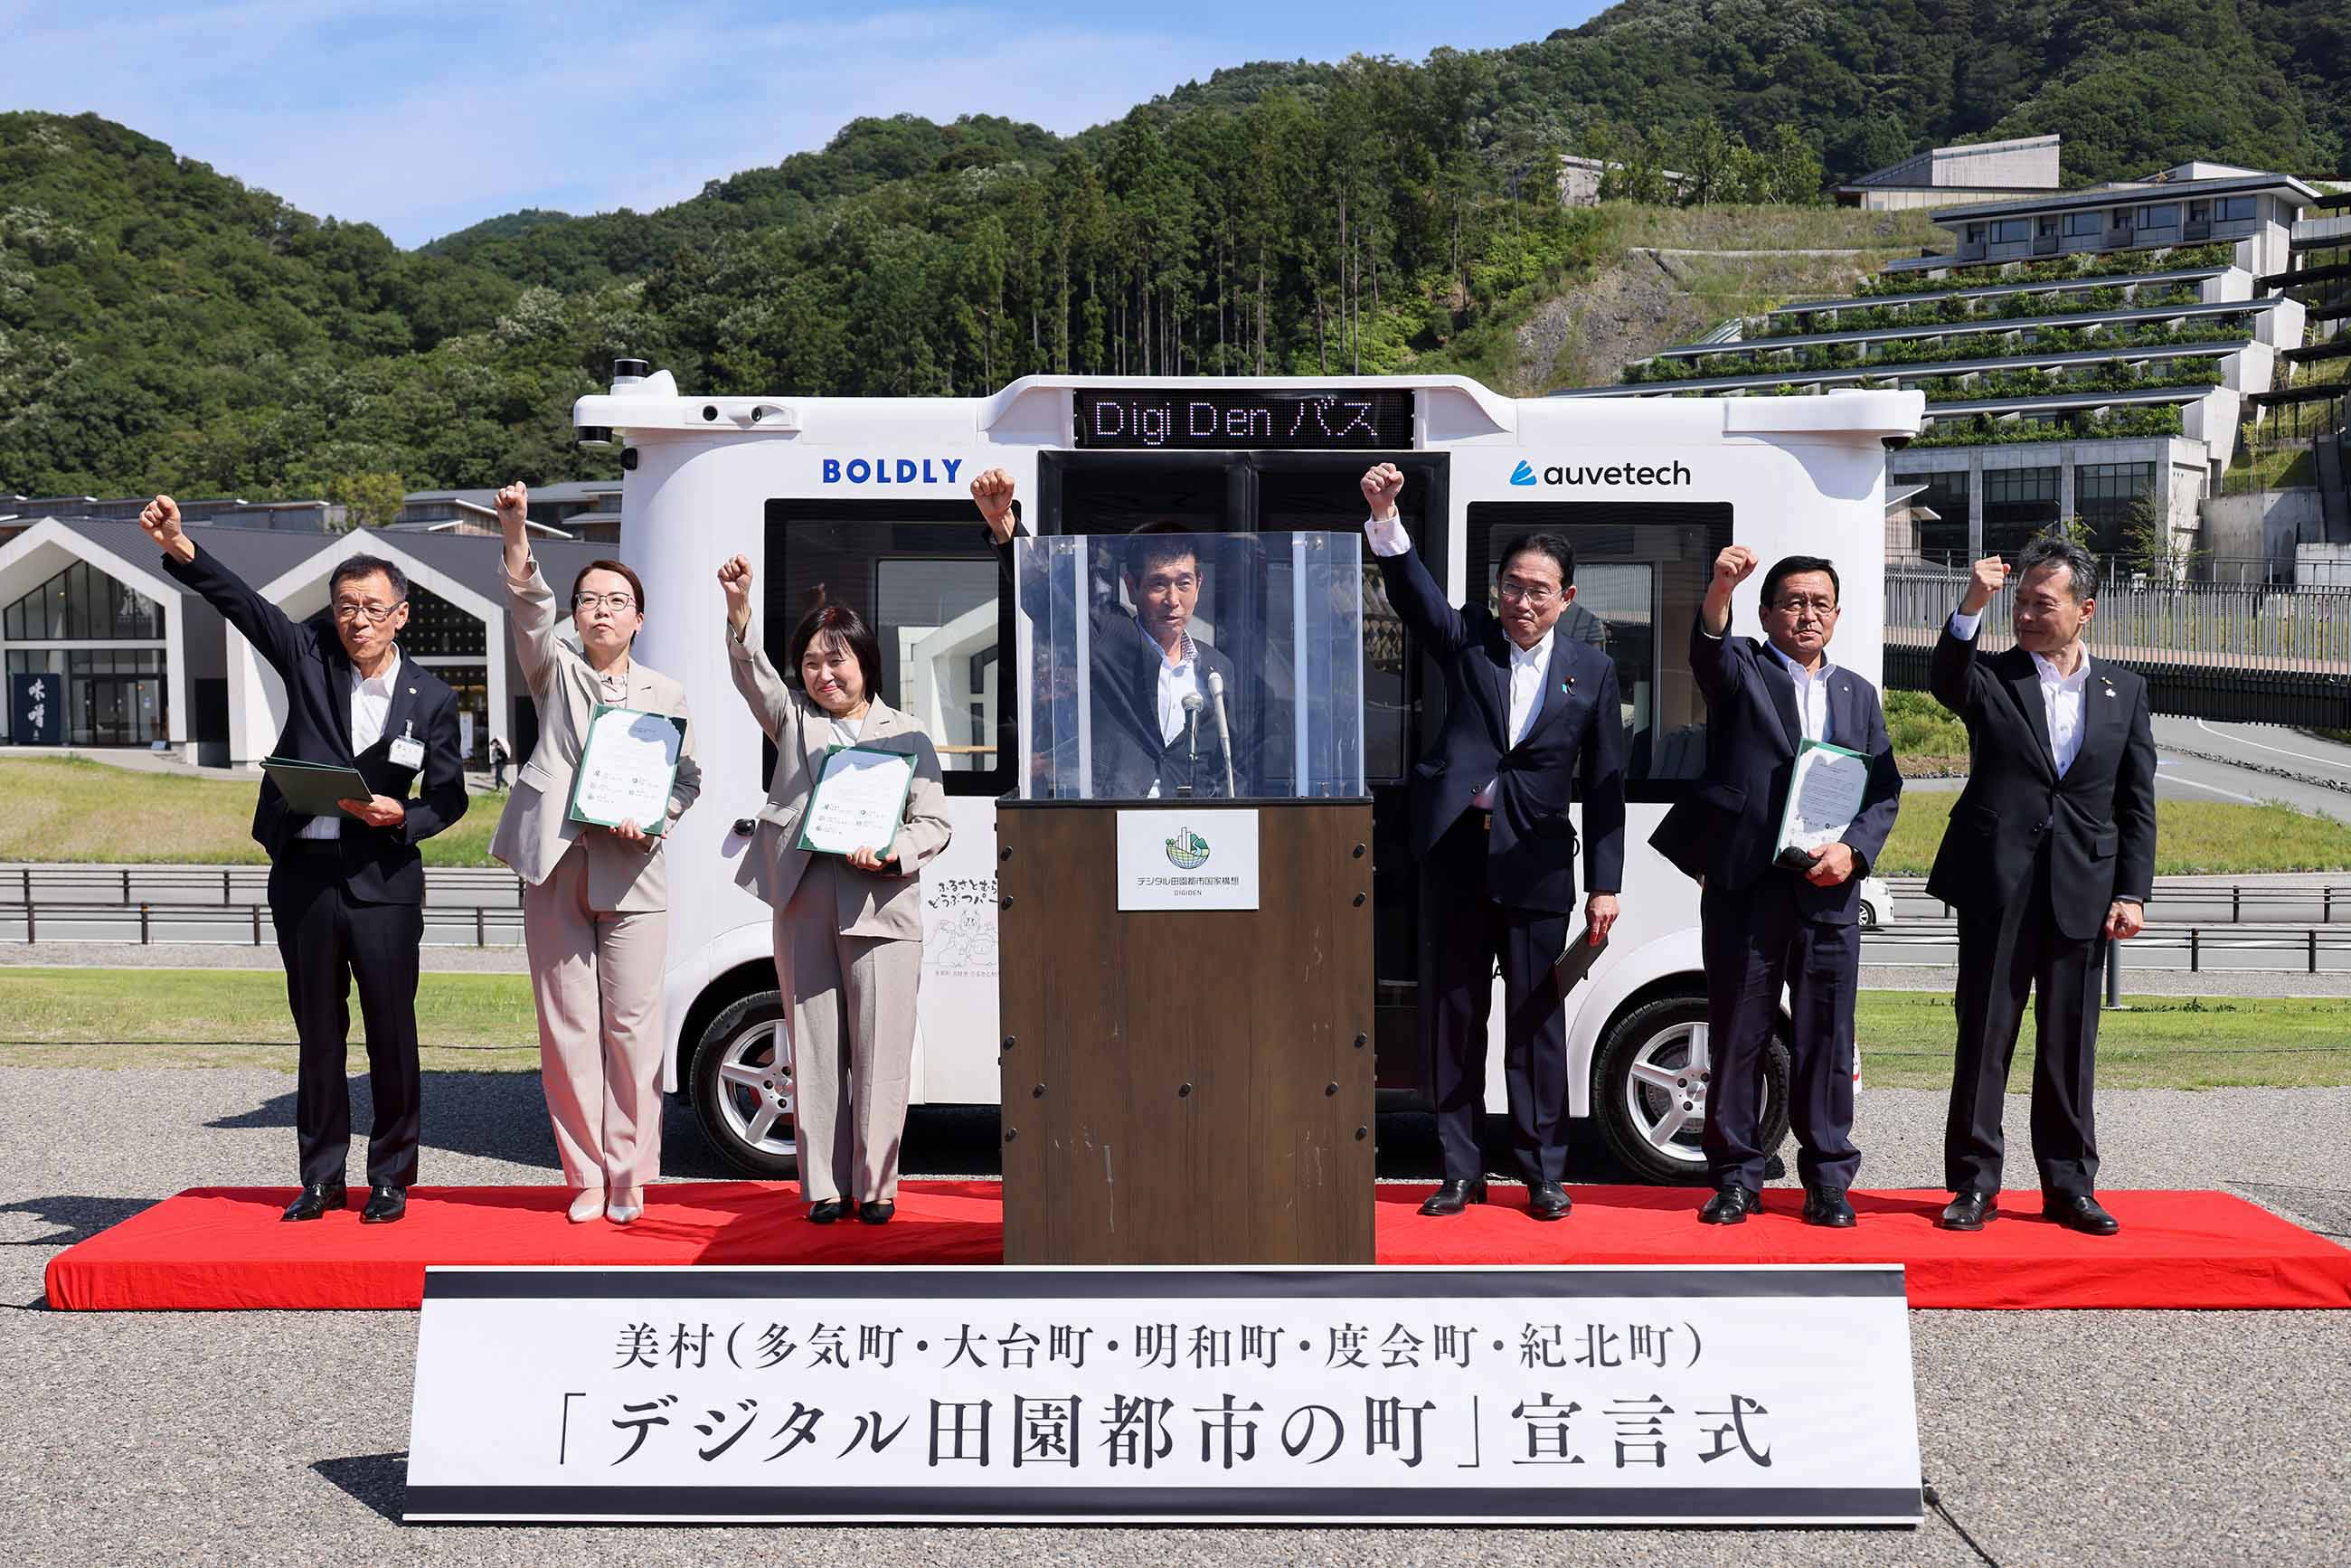 「デジタル田園都市の町」宣言式に出席する岸田総理３